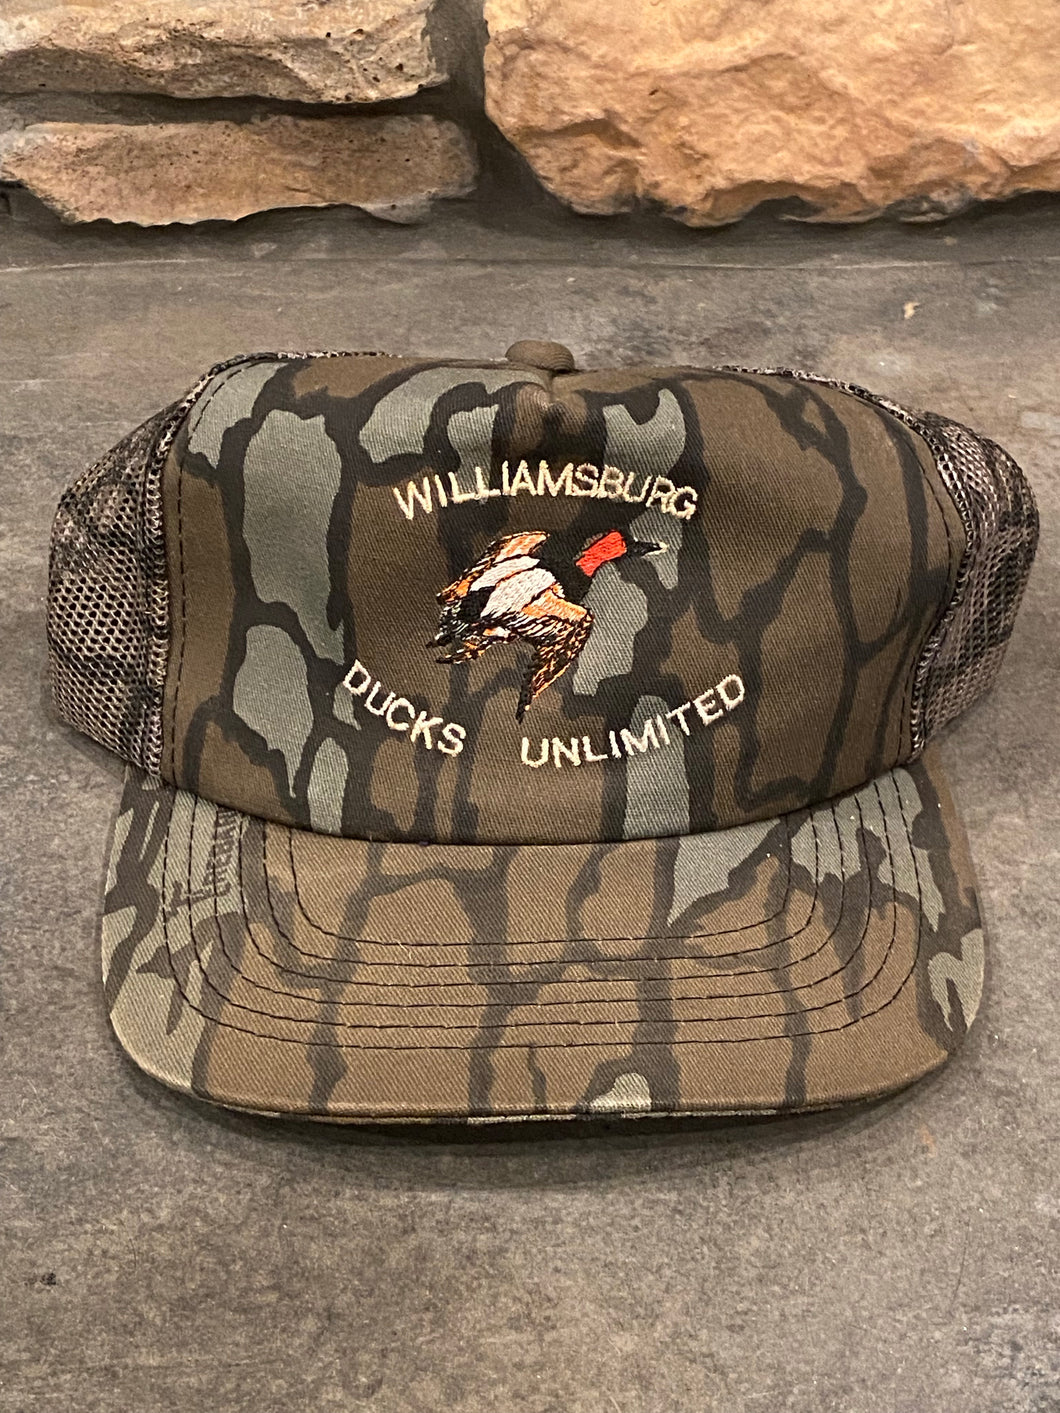 Williamsburg Ducks Unlimited Trebark Snapback🇺🇸